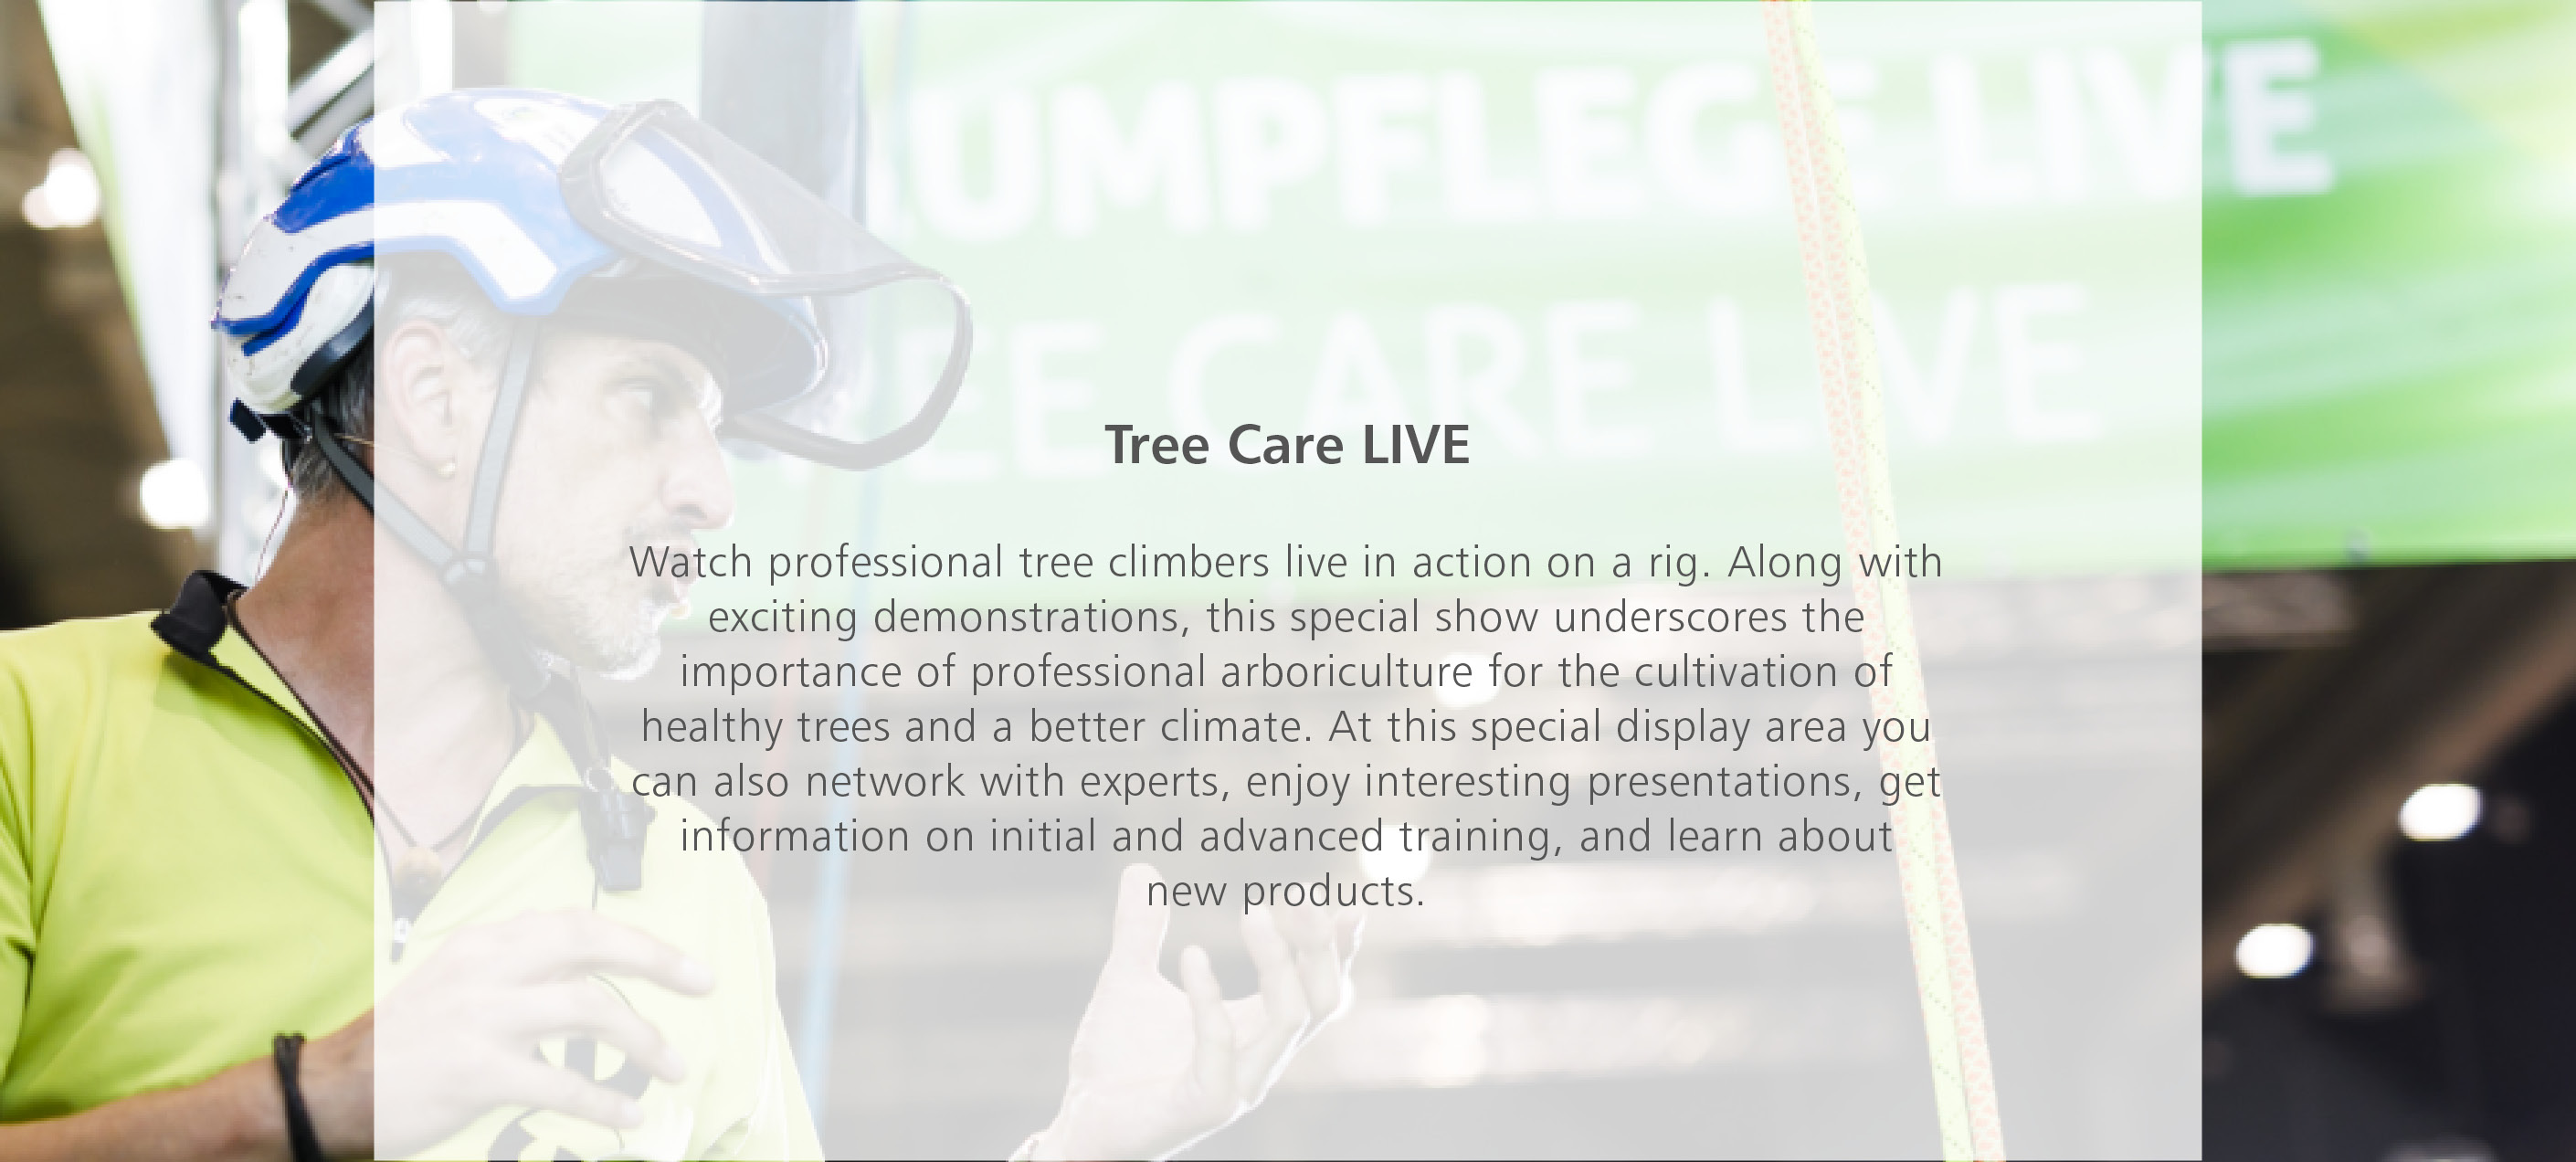 Tree care LIVE